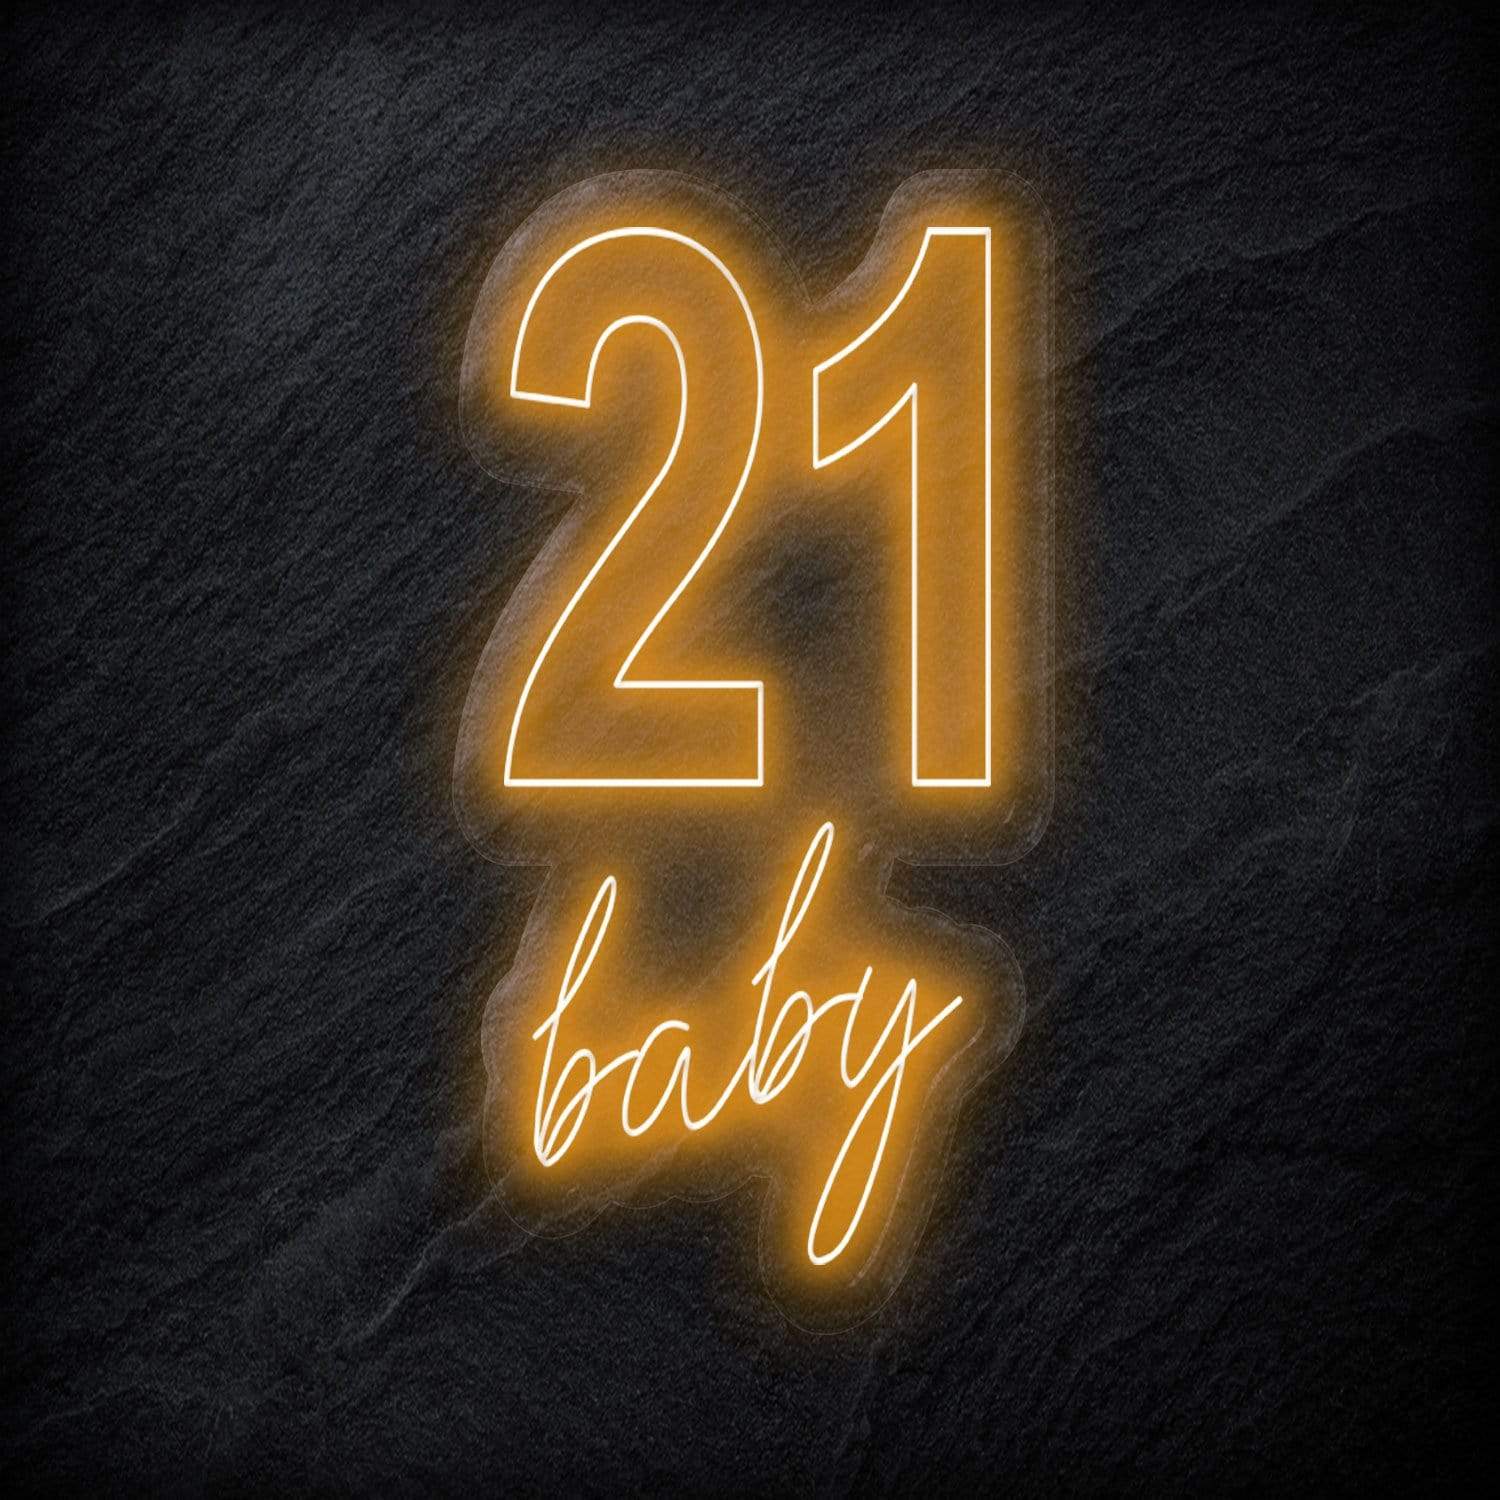 "21 Baby" LED Neon Sign Schriftzug - NEONEVERGLOW